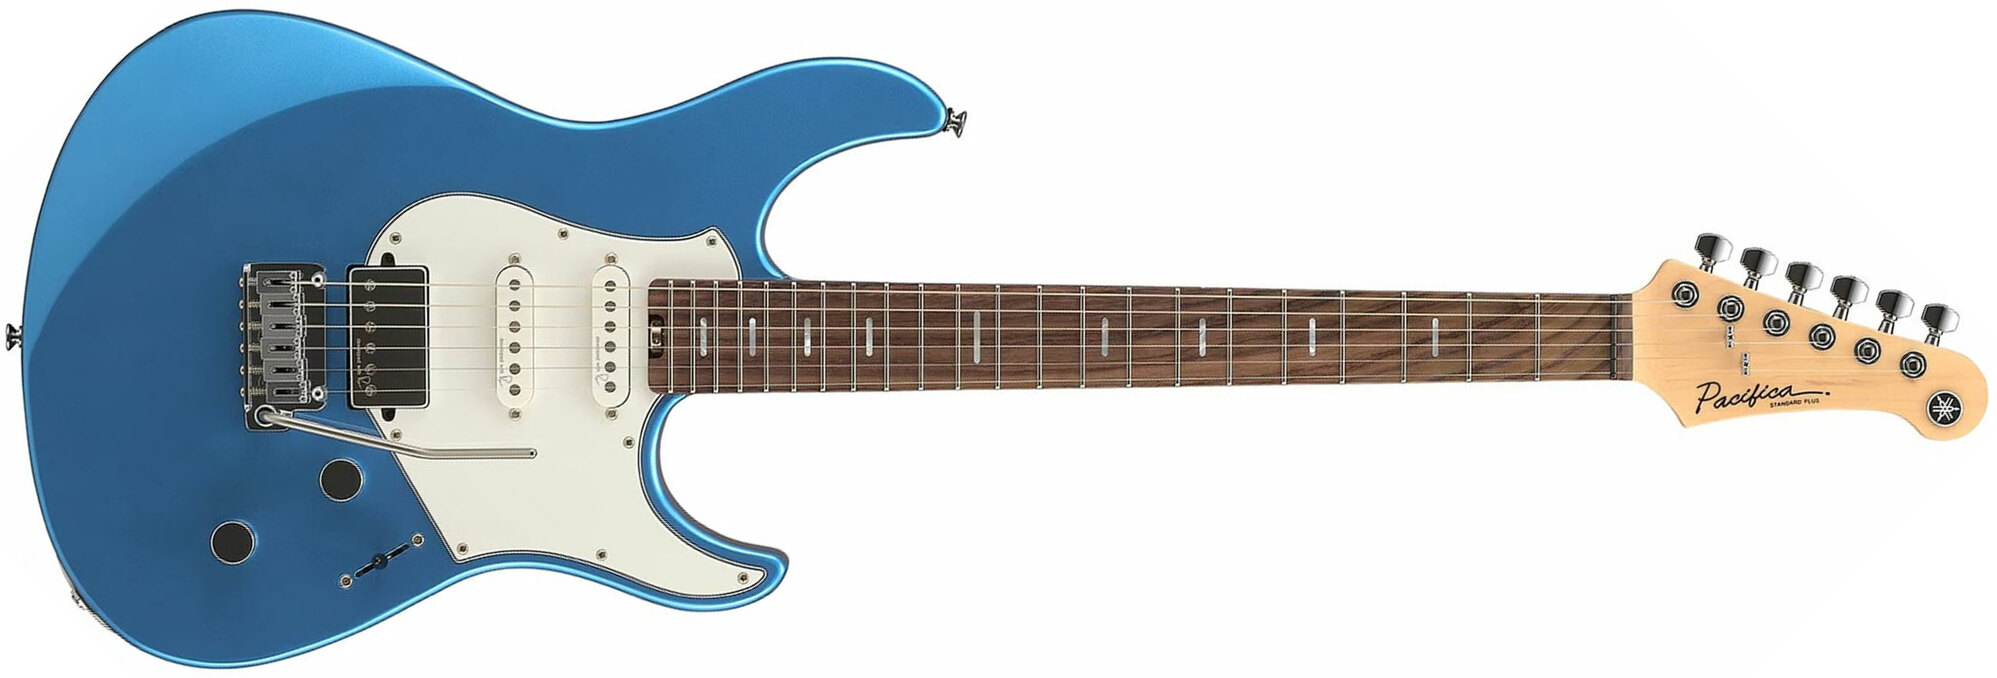 Yamaha Pacifica Standard Plus Pacs+12 Trem Hss Rw - Sparkle Blue - Guitare Électrique Forme Str - Main picture